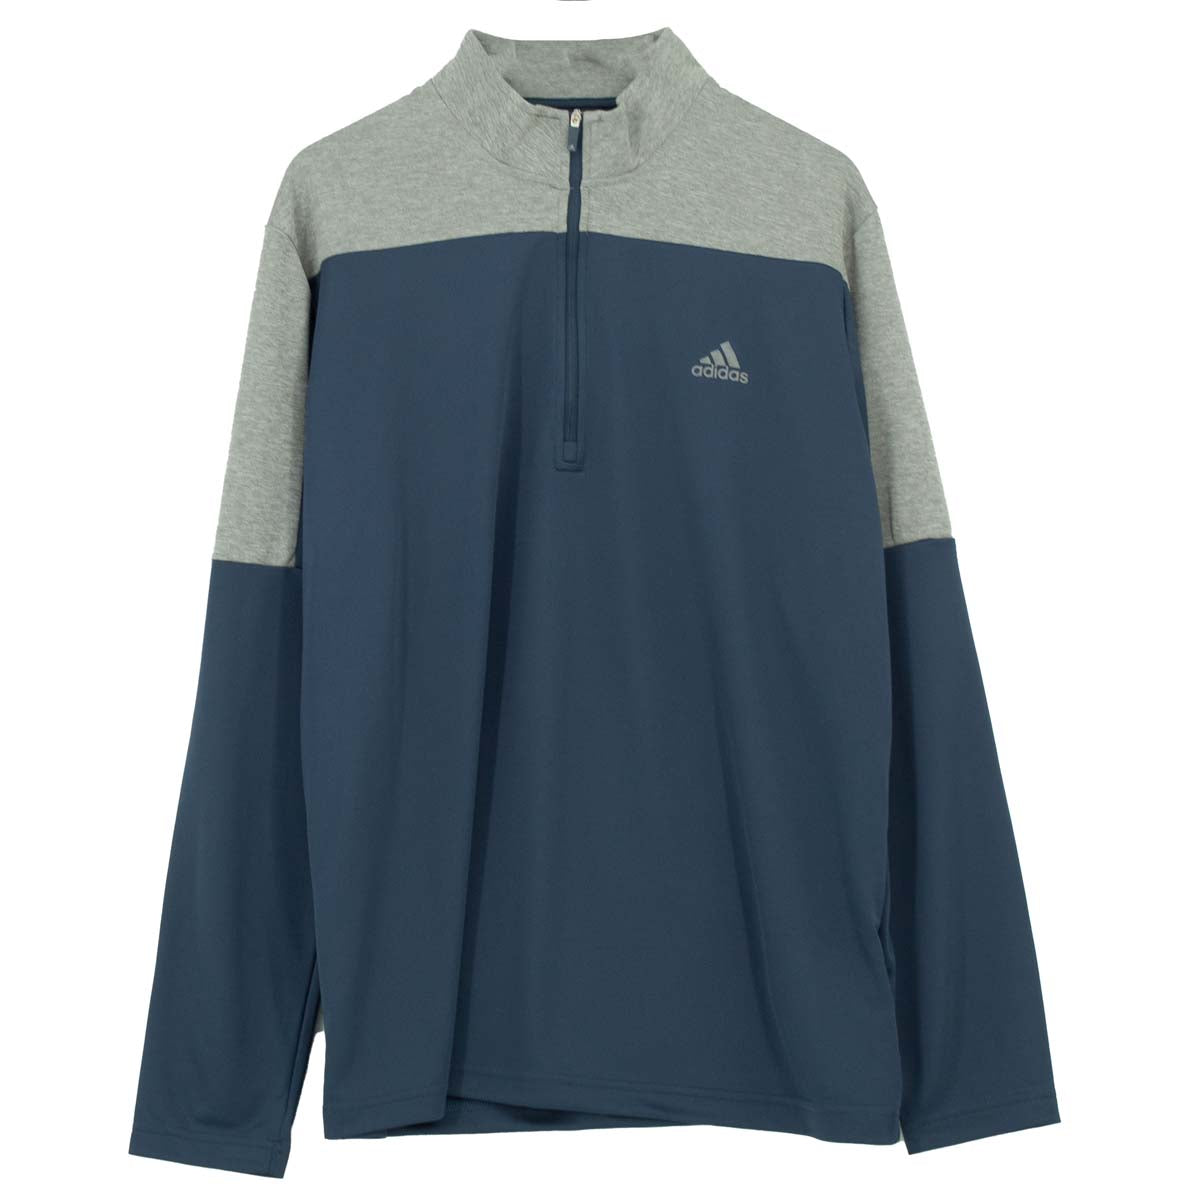 Adidas 1/4 Zip UPF Lightweight Shirt Sweater Herren Pullover GR0757 L